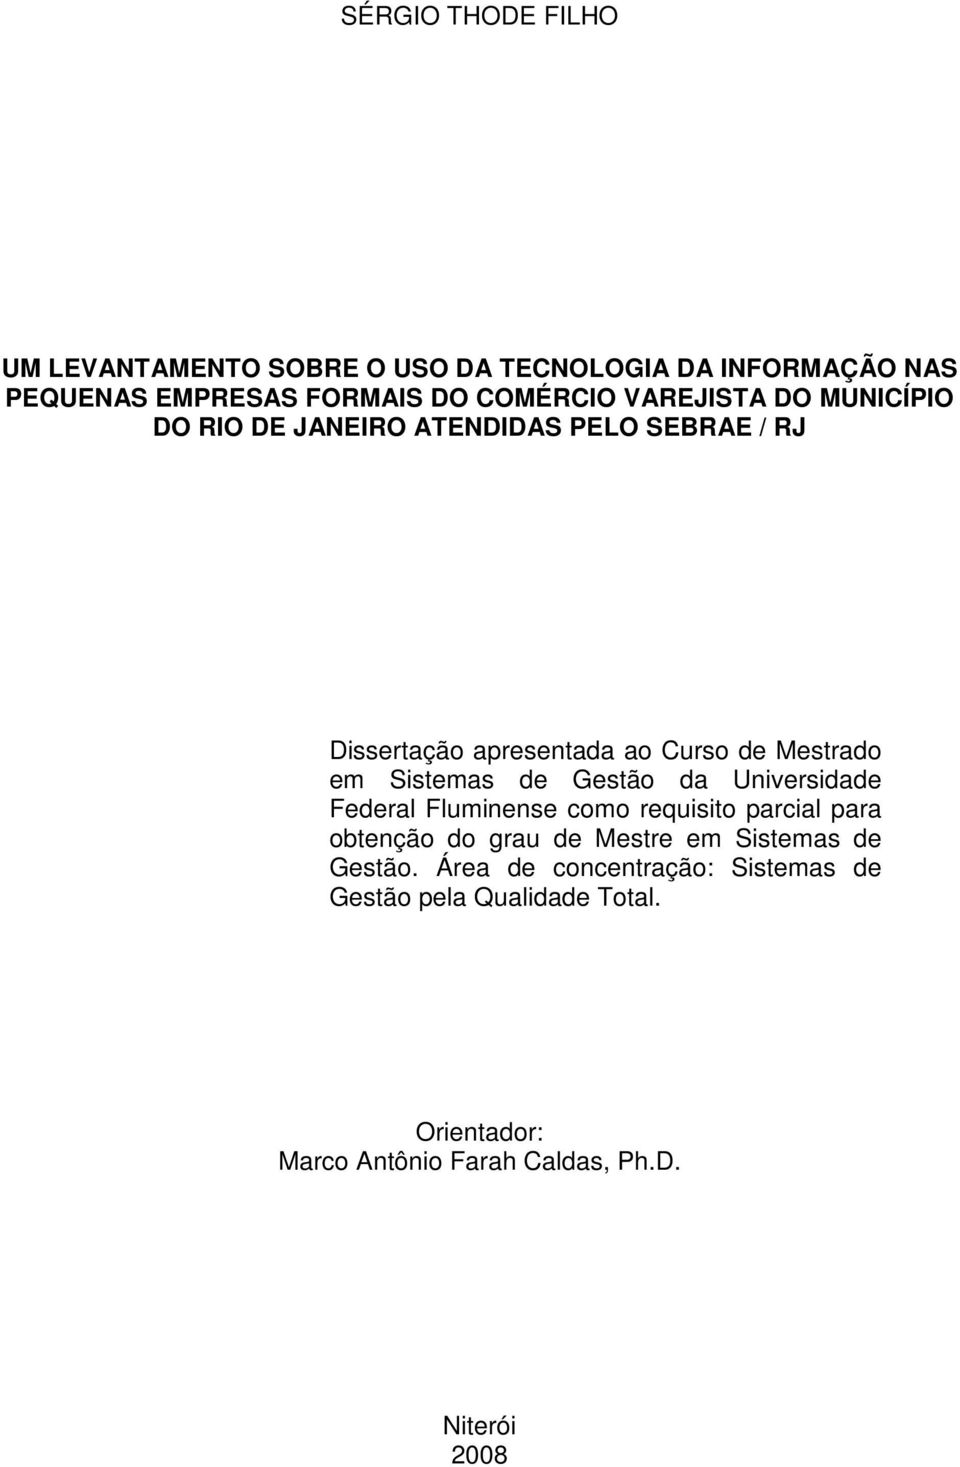 Sistemas de Gestão da Universidade Federal Fluminense como requisito parcial para obtenção do grau de Mestre em Sistemas